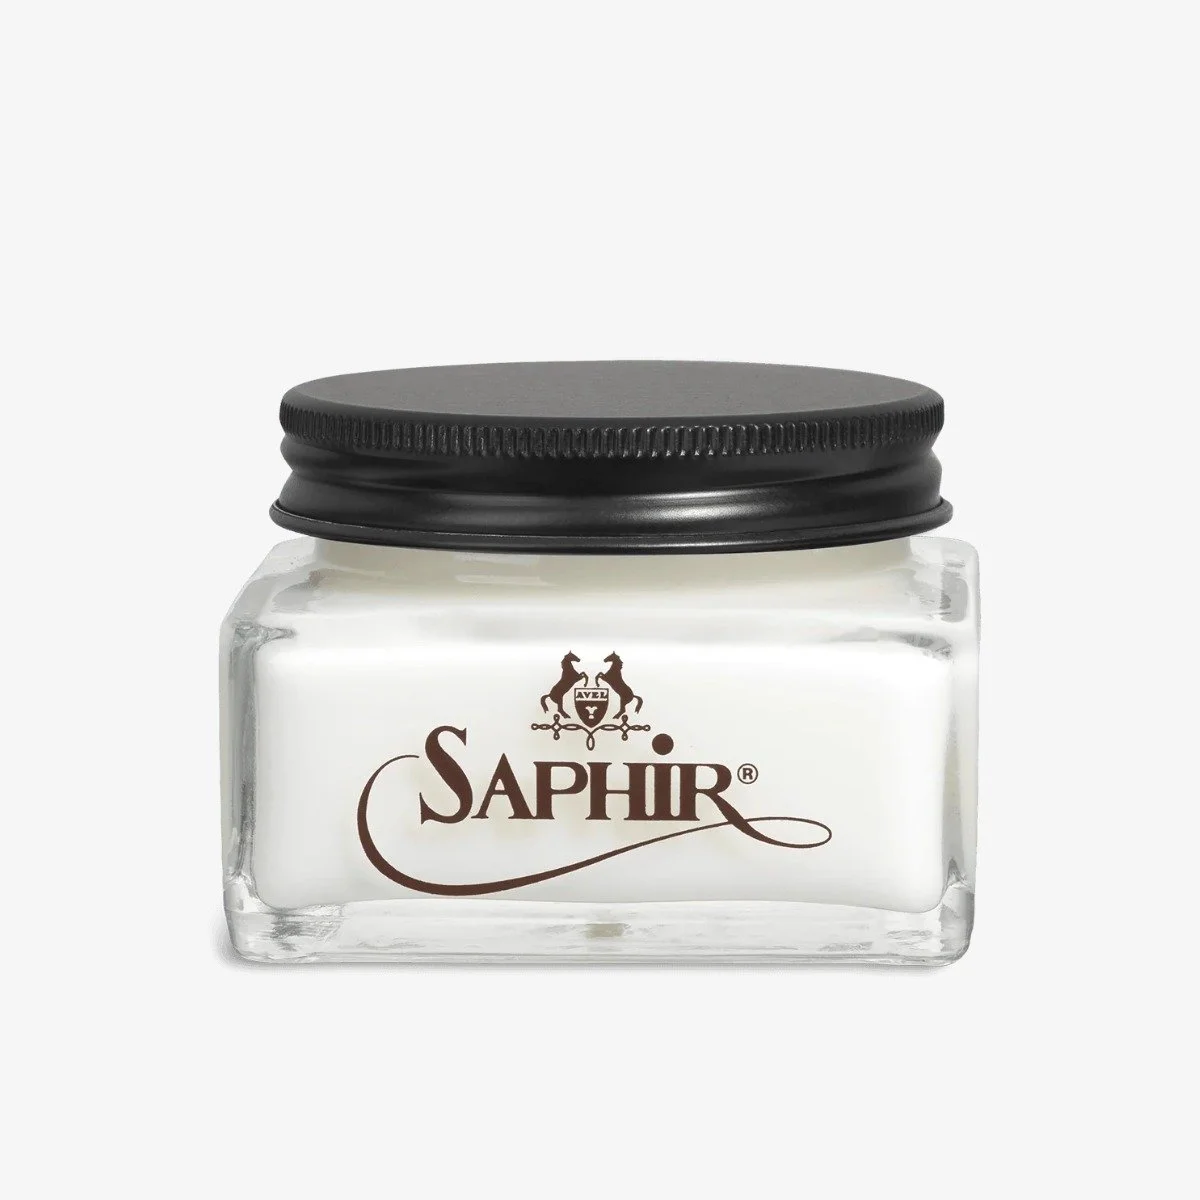 Saphir Creme 1925 neutral